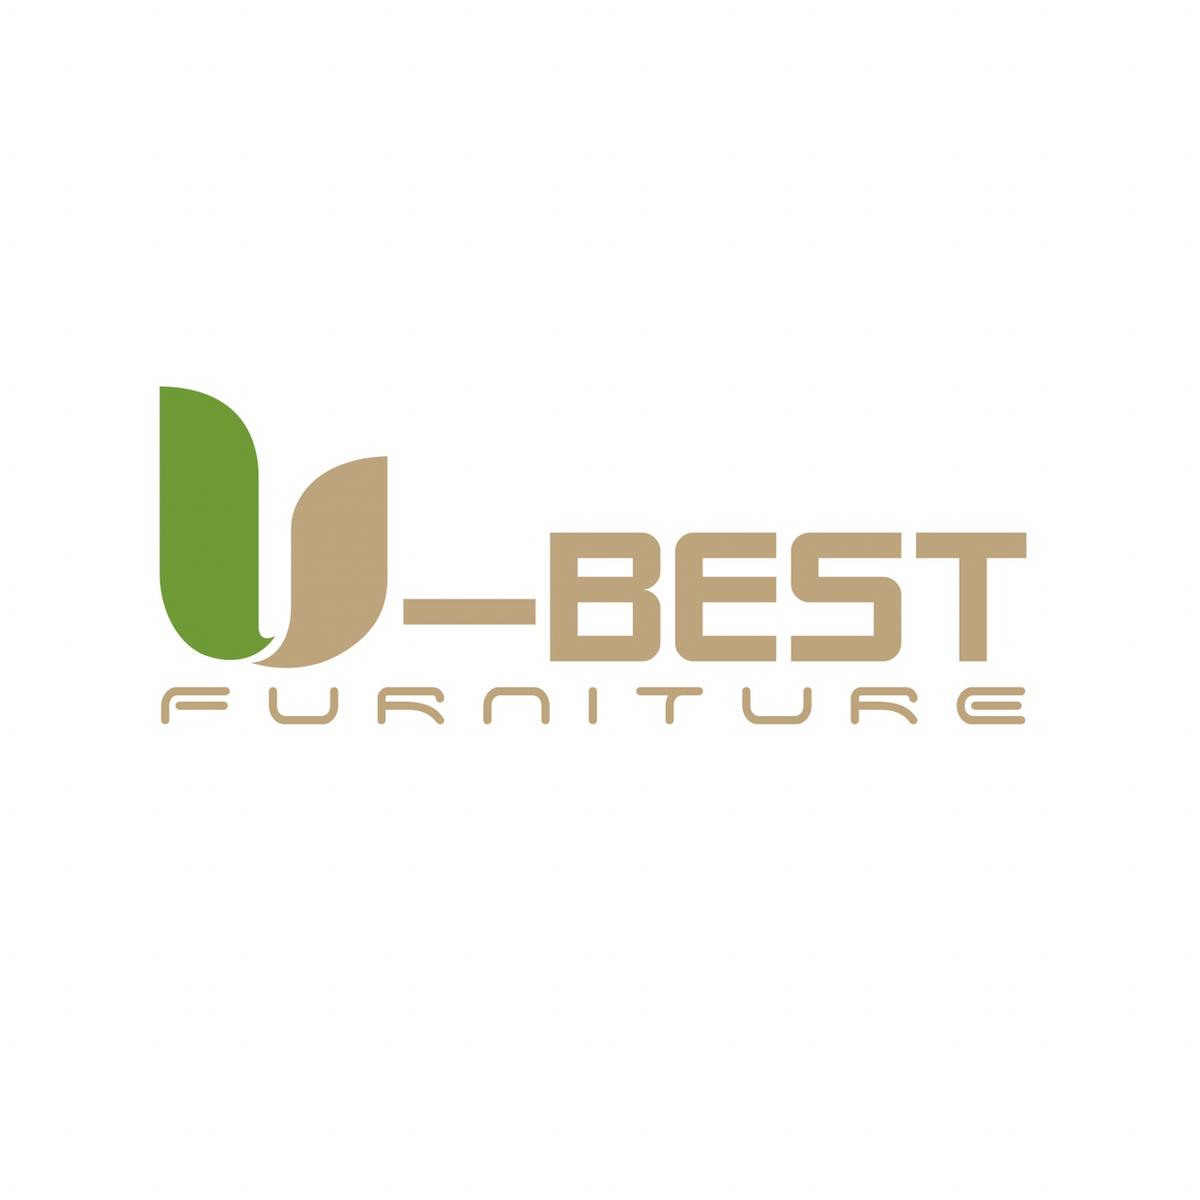 UBEST Furniture's images